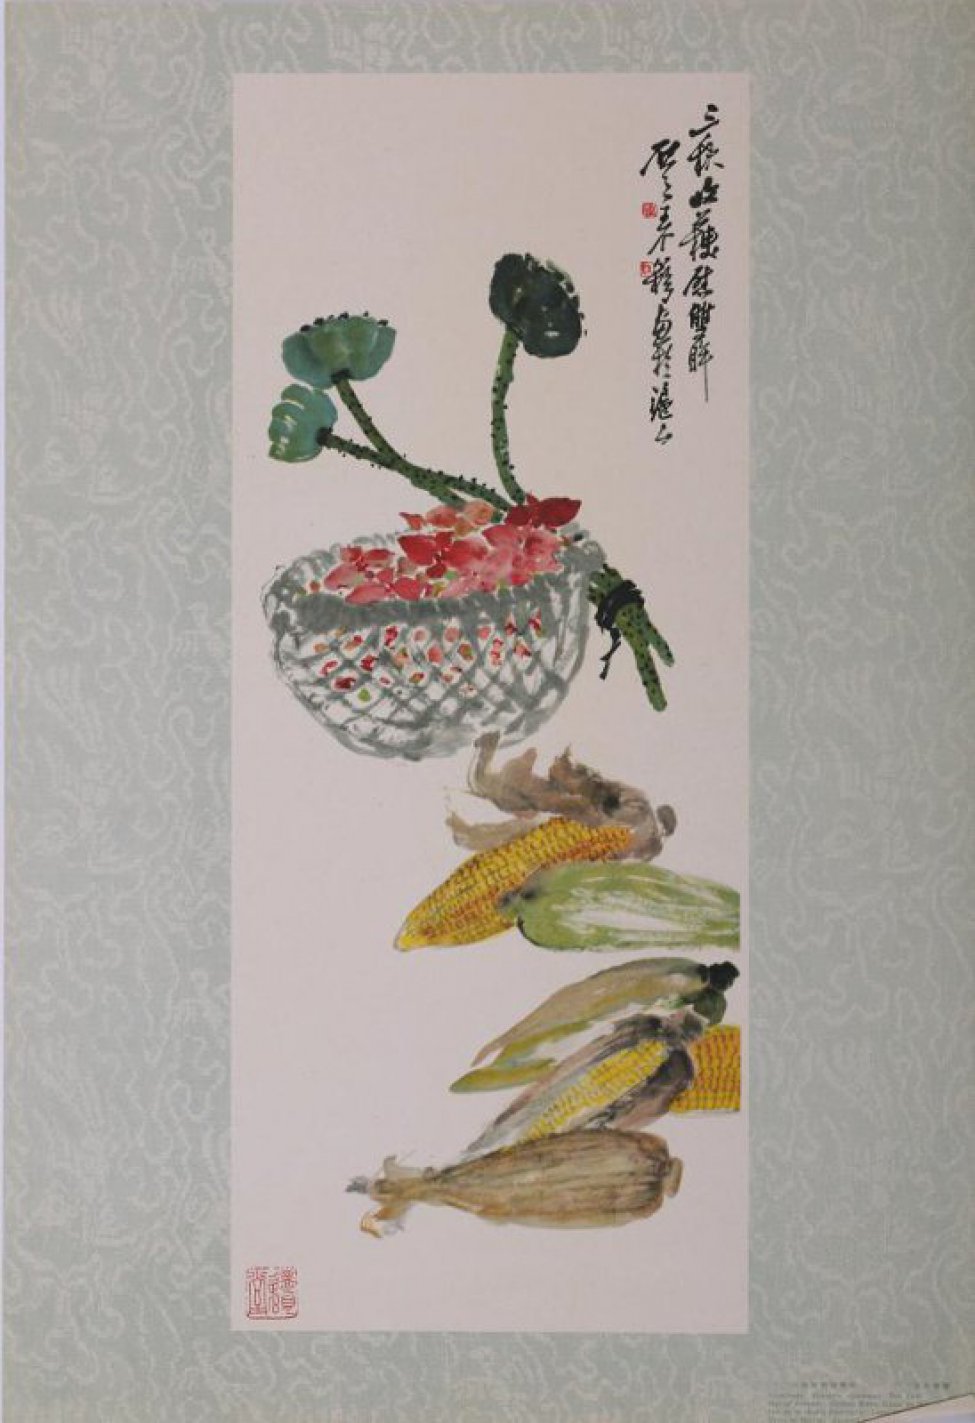 Изображена корзинка с красными лепестками, за ней связанные вместе три стебля  растения. Ниже шесть початков кукурузы. Слева внизу 1 и справа вверху  14 иероглифов, бумага на полях голубая.